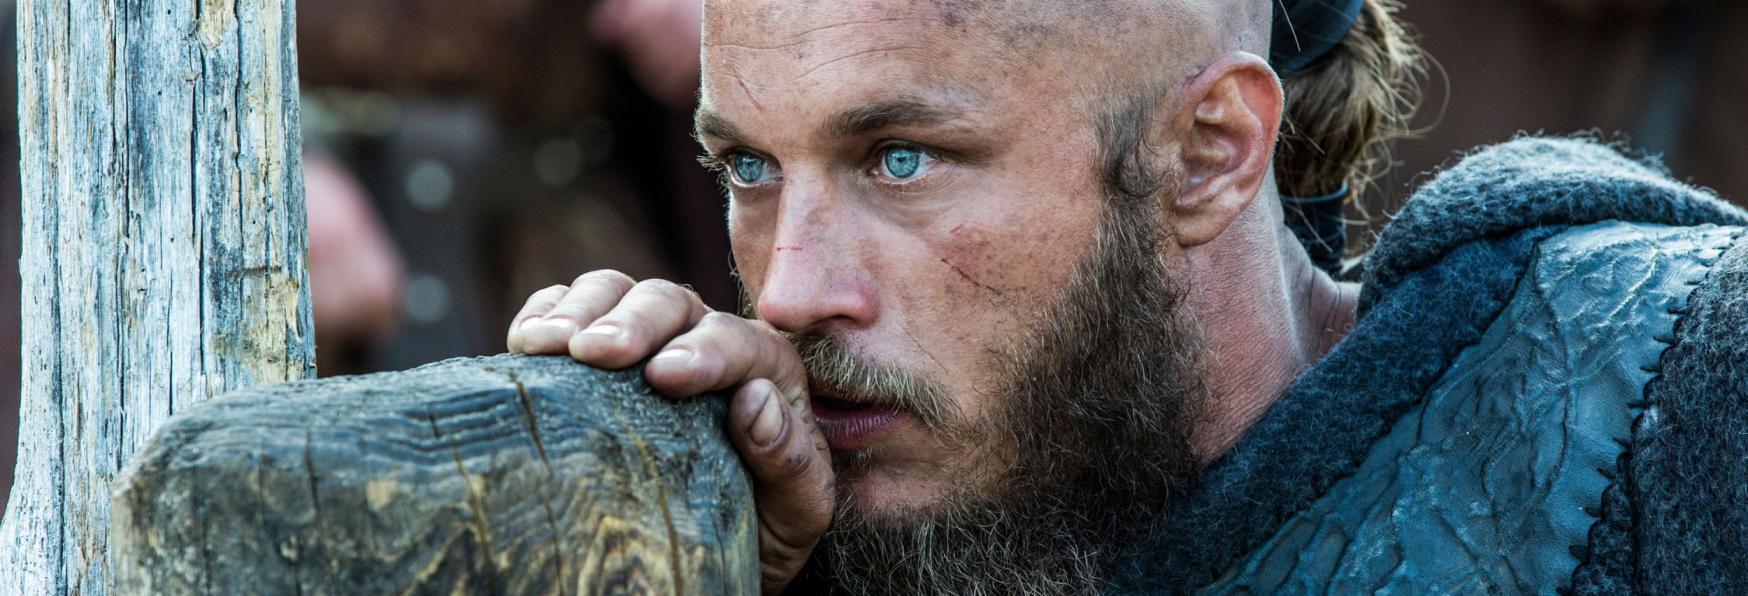 Vikings: Valhalla - Netflix pubblica i Poster dei Protagonisti della Serie TV Spin-off